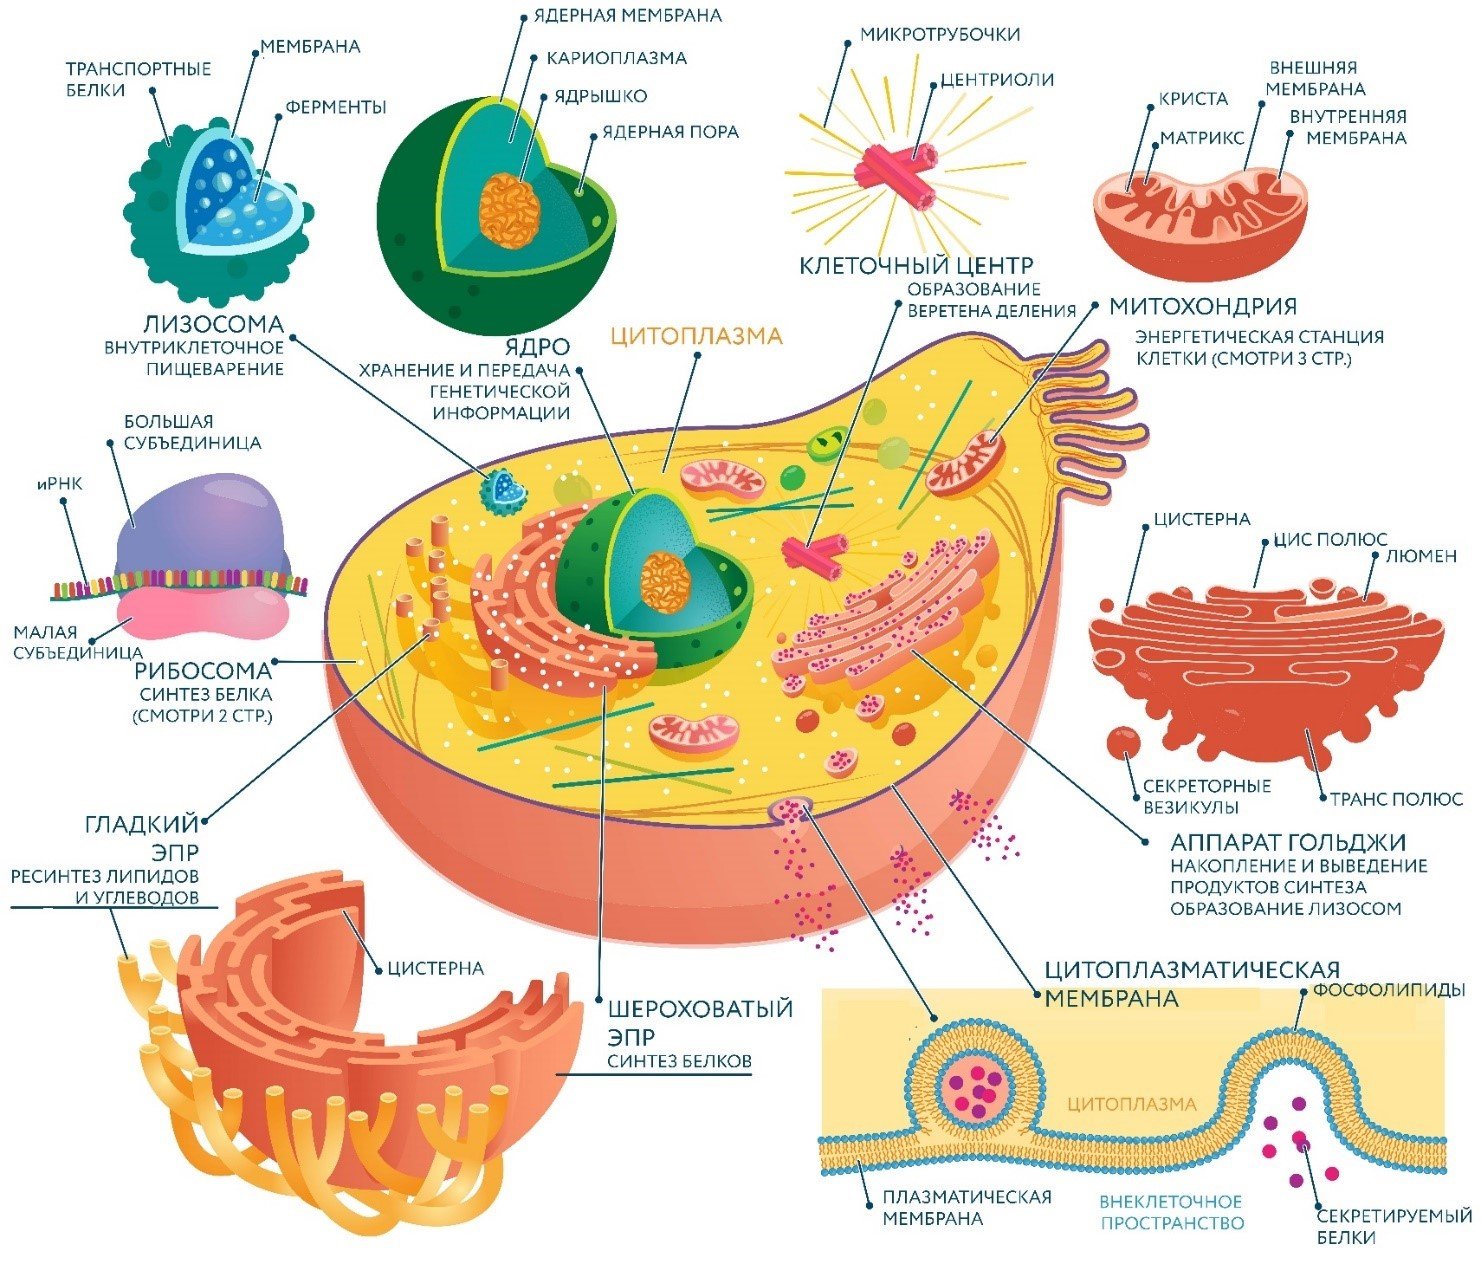 Какое значение этих органоидов в жизнедеятельности клетки